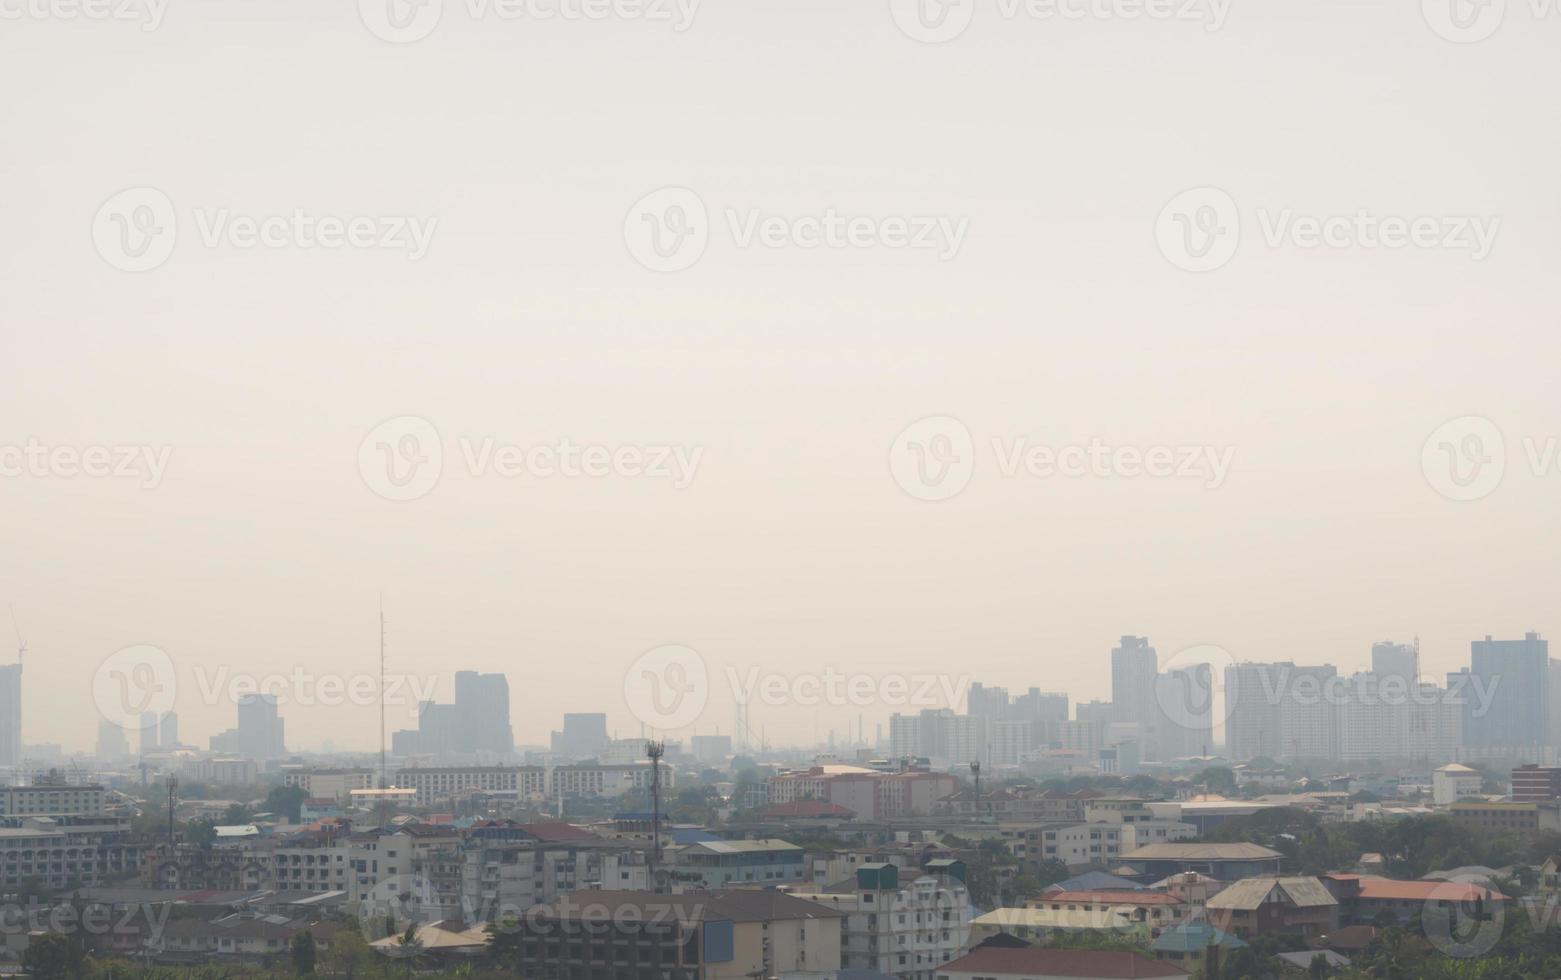 problemas de poluição de neblina excederam os padrões em cidades lotadas foto